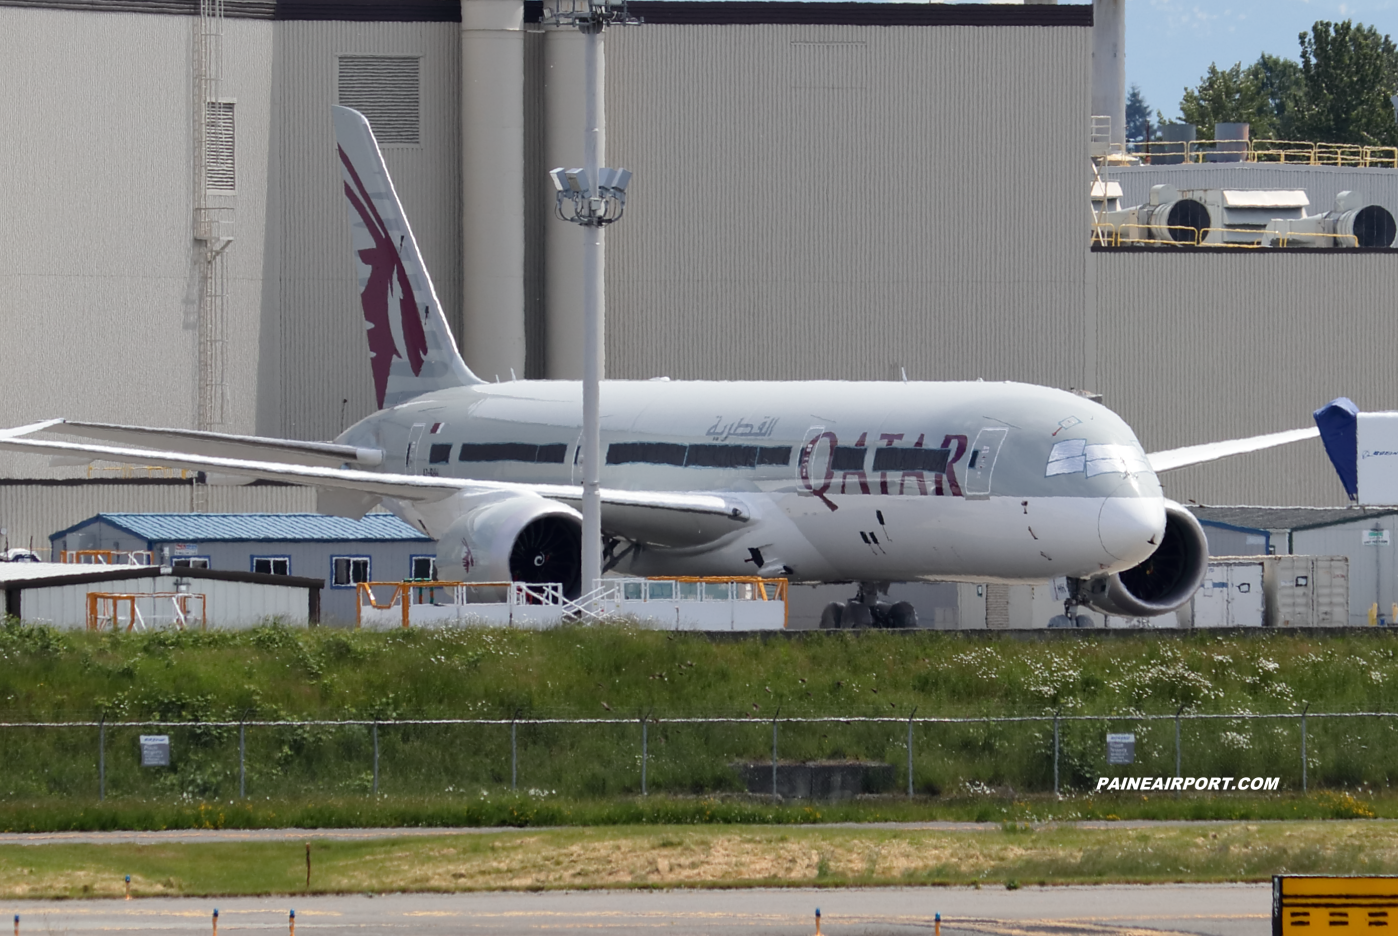 Qatar Airways 787-9 A7-BHH at Paine Field